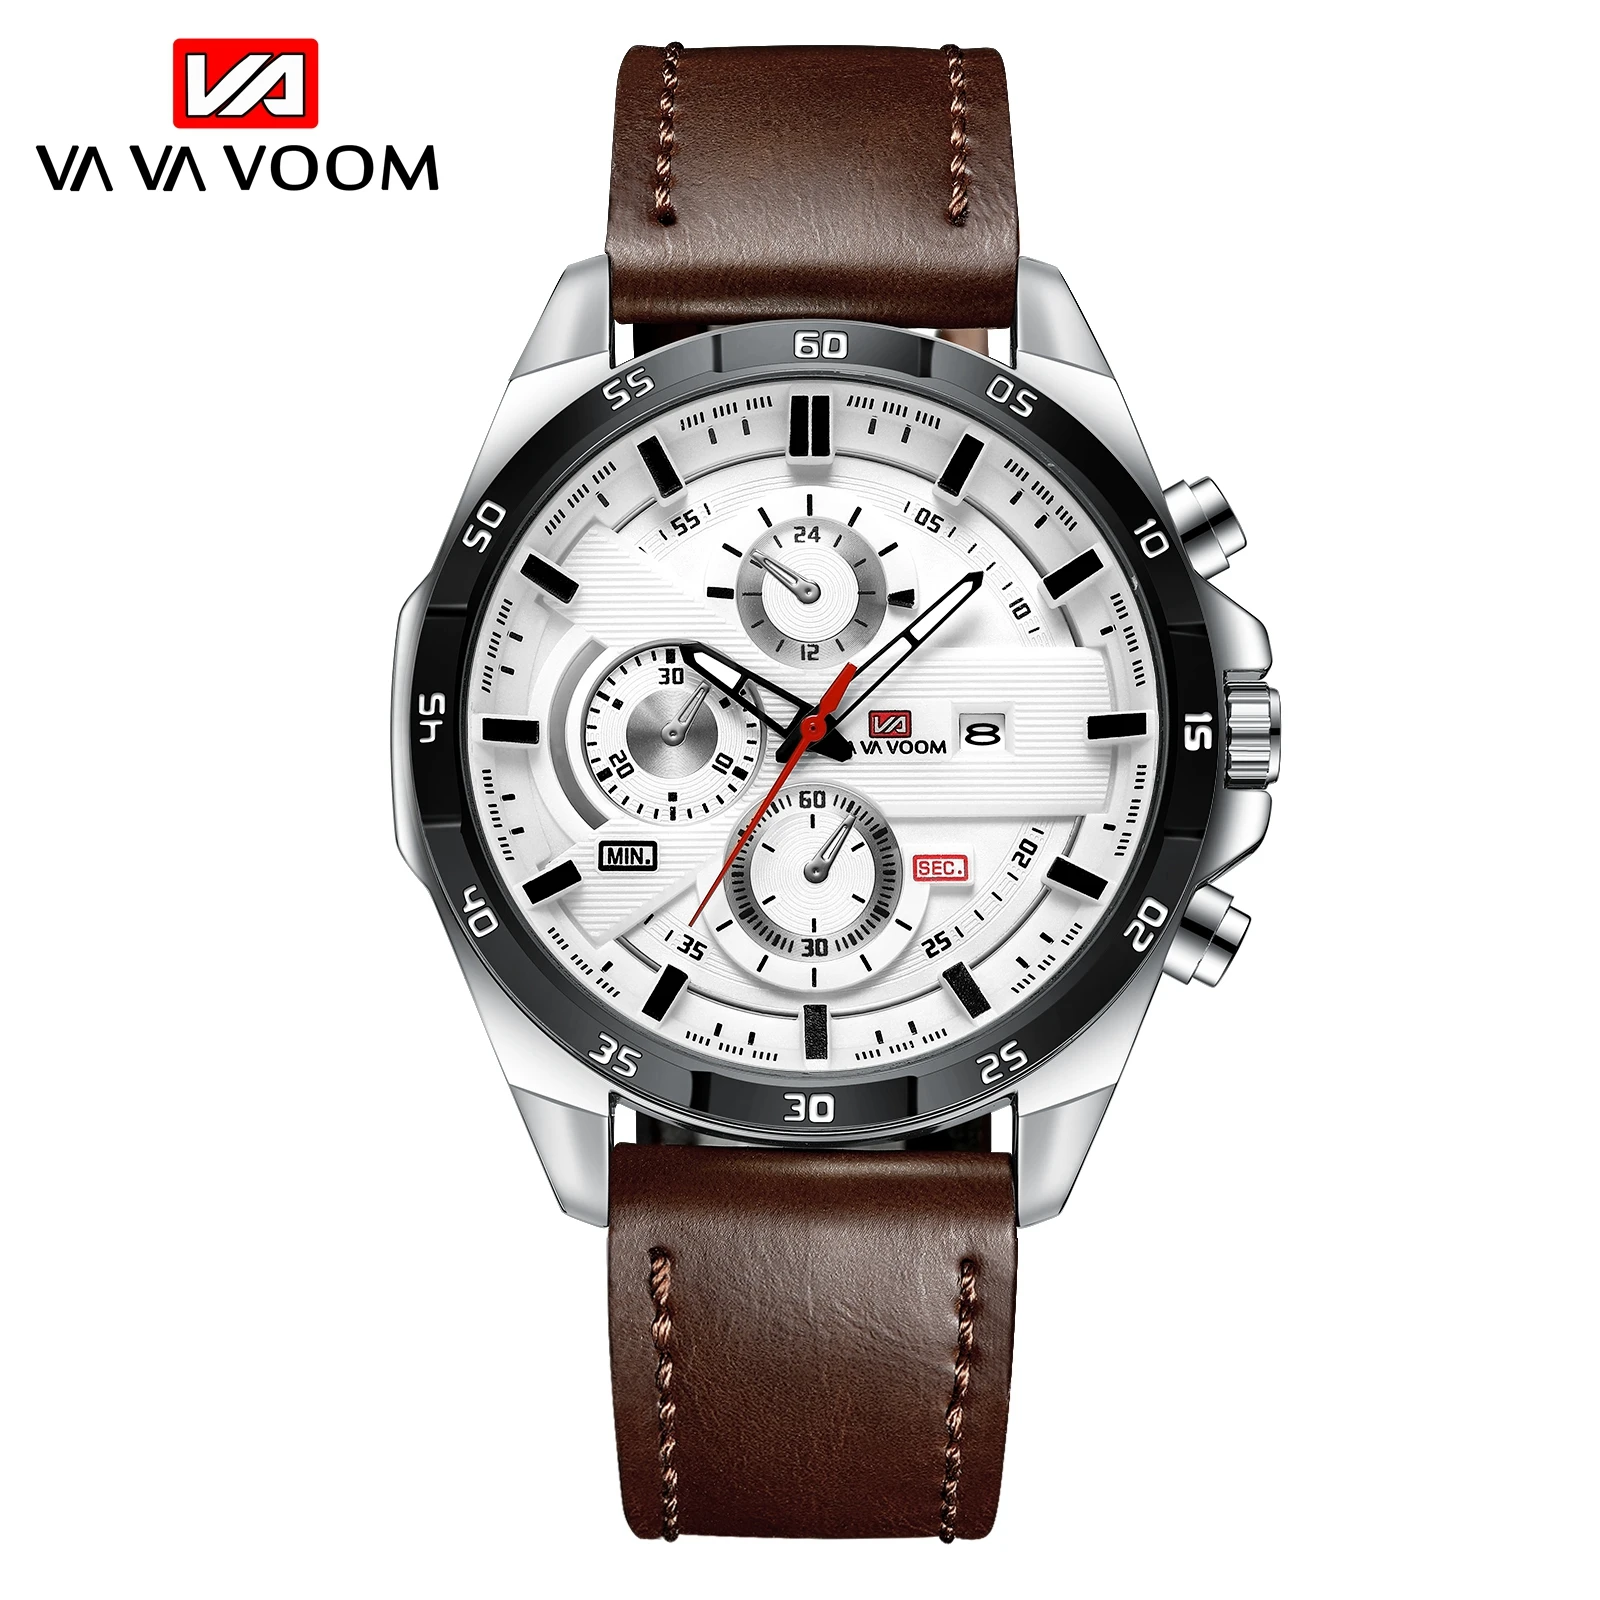 

Спортивные мужские часы VAVA VOOM, роскошные деловые кварцевые часы от лучшего бренда, мужские водонепроницаемые часы с датой, мужские часы